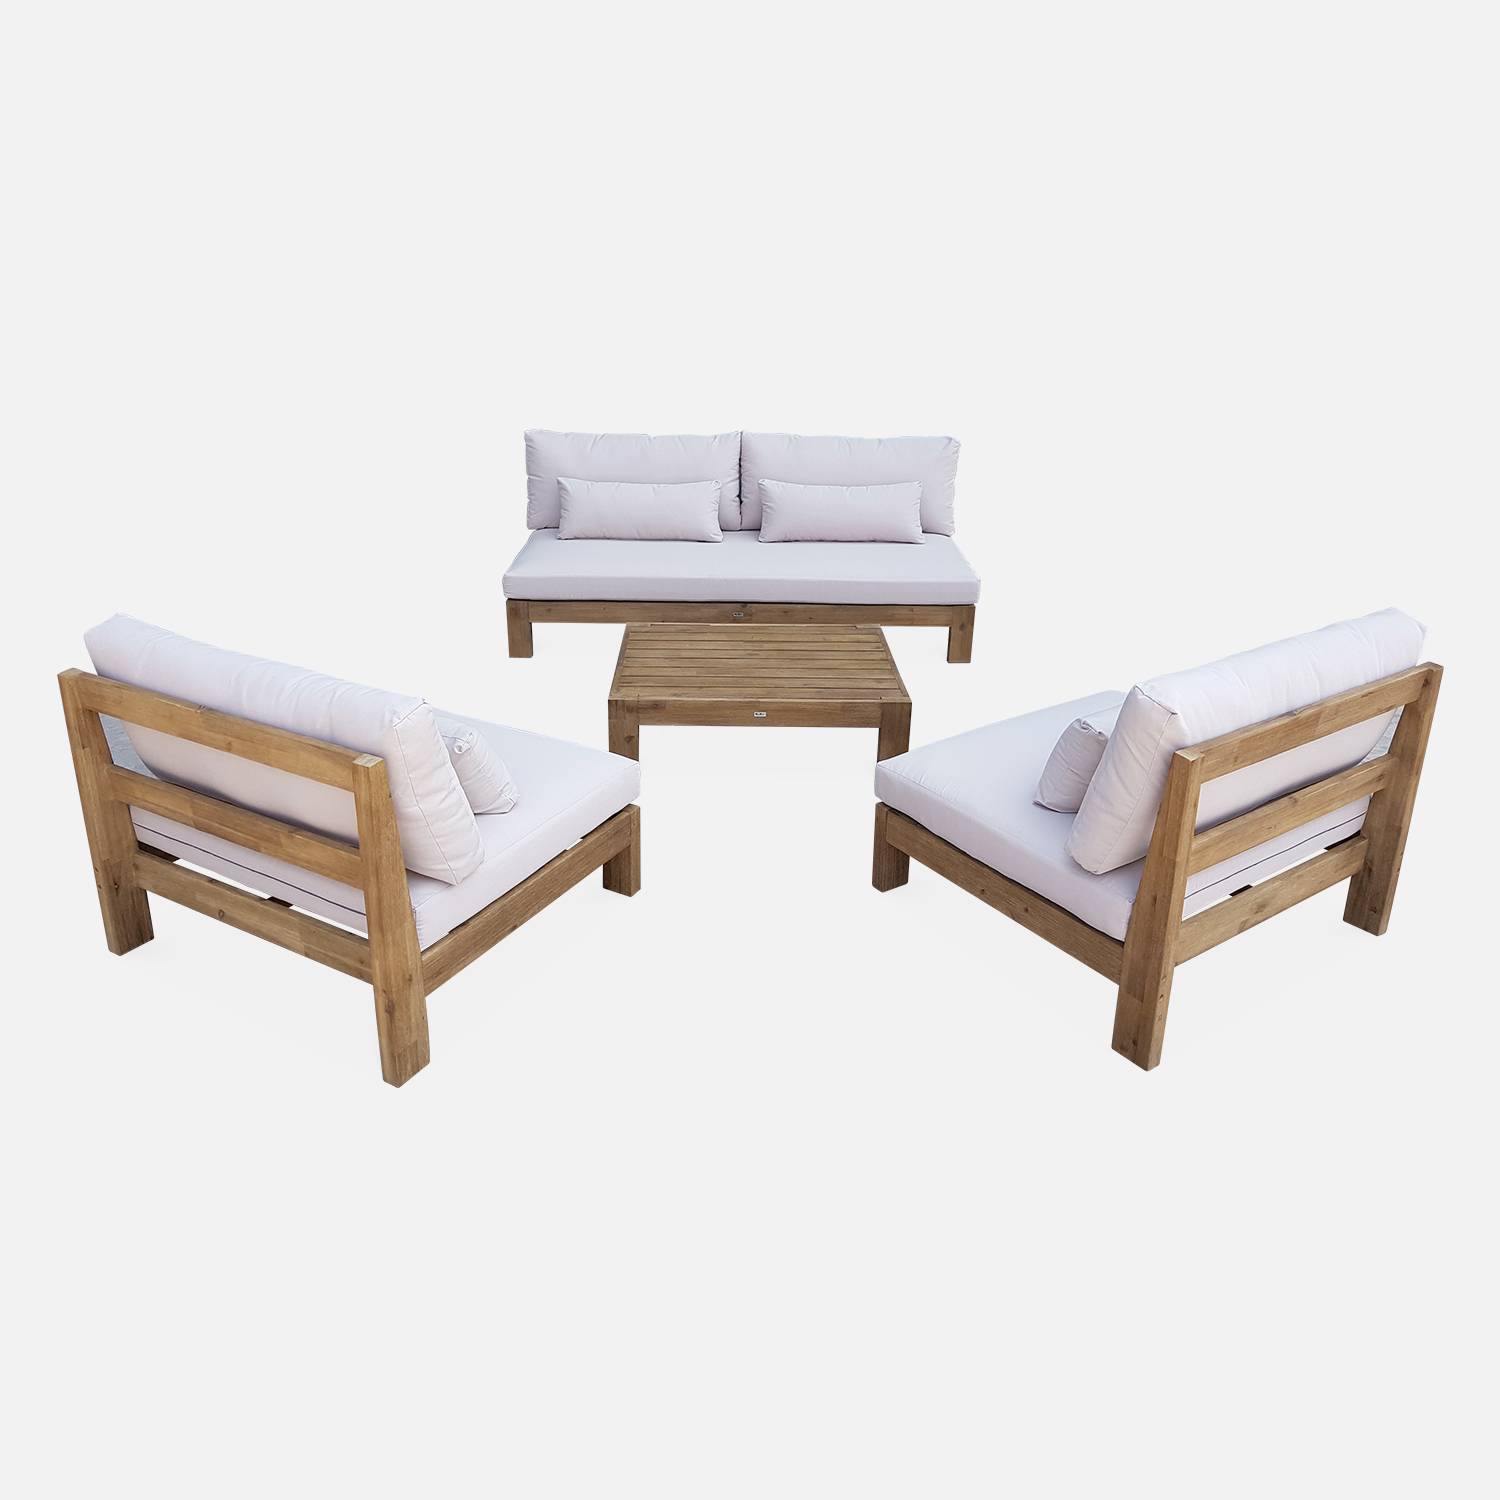  Conjunto de móveis de jardim XXL em madeira escovada, efeito branqueado - BAHIA - almofadas bege, ultra confortáveis, 5 a 7 lugares garden-lounge-xxl-wood-brush-white-bahia-cushions-beige Photo6